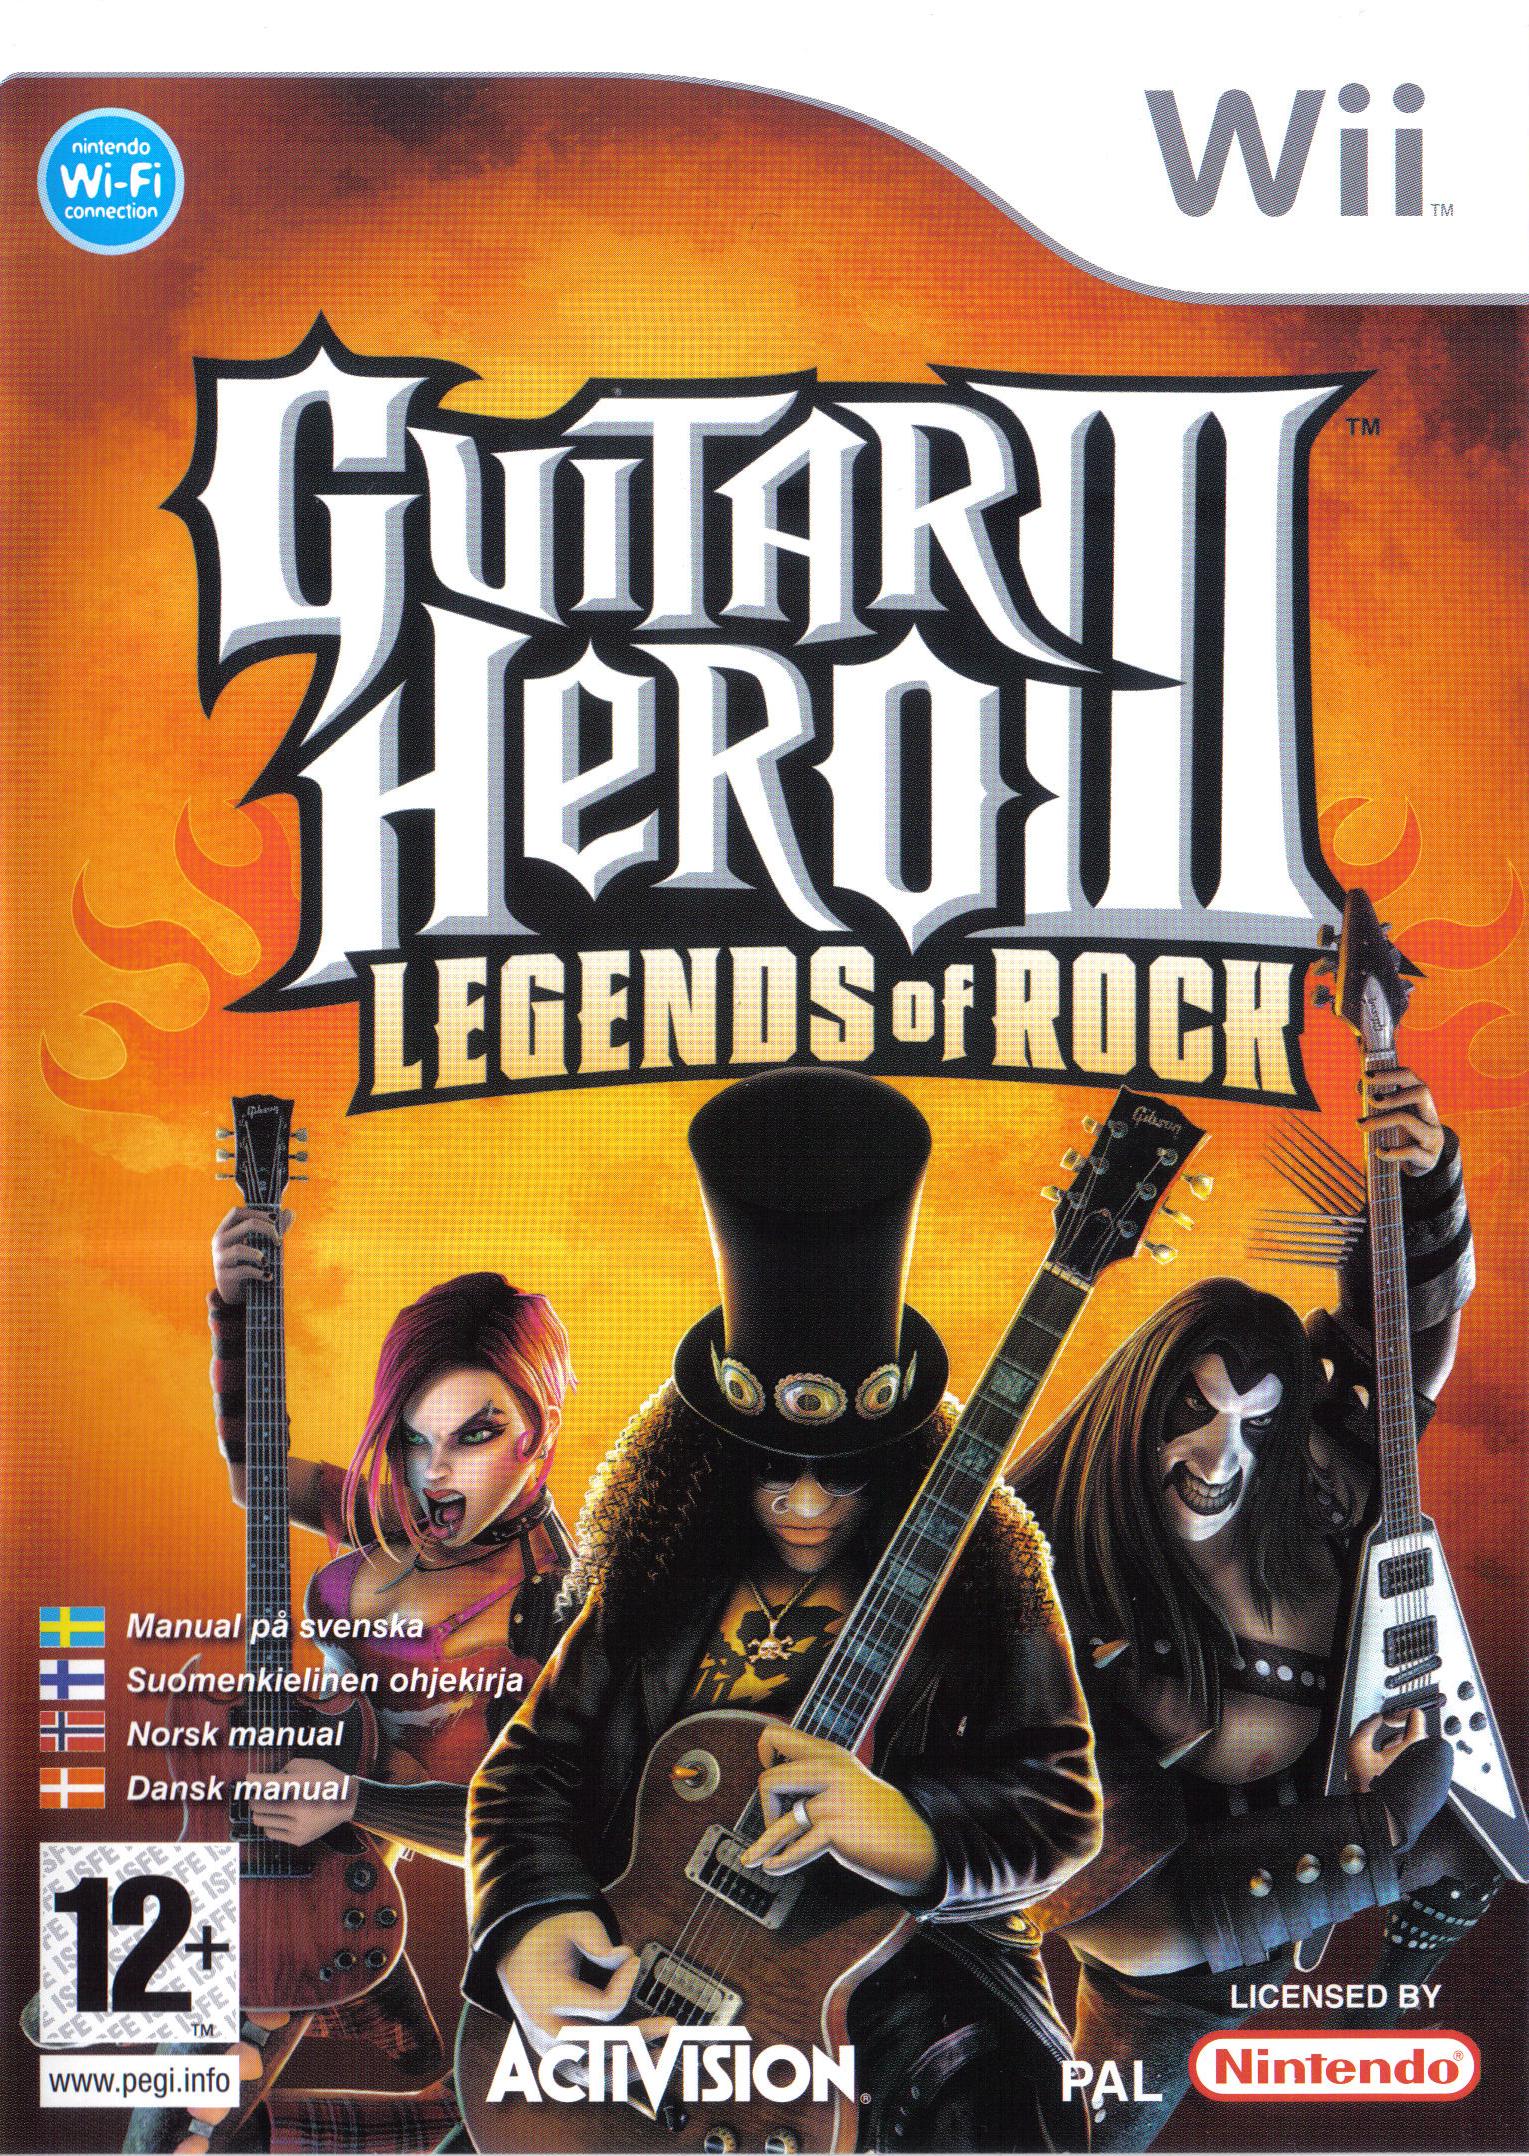 Guitar Hero III: Legends of Rock screenshots, image and picture